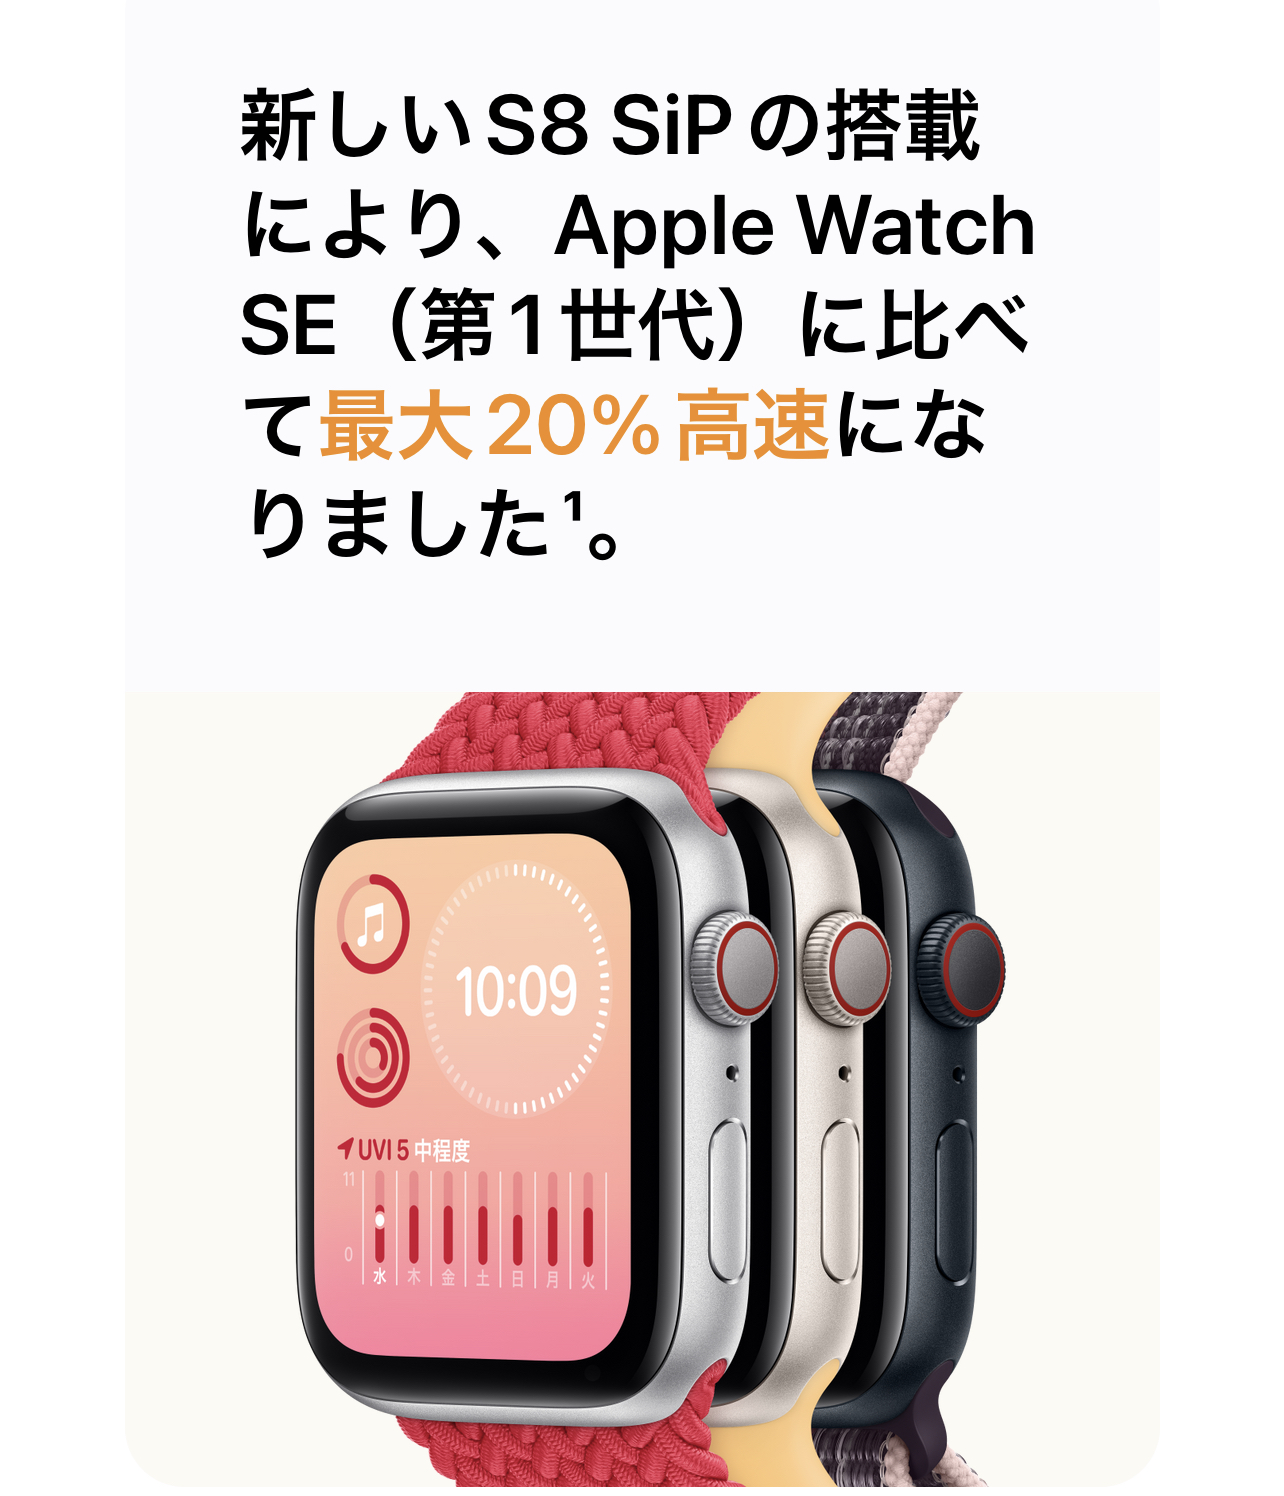 Apple Watchの新型SE 2がAmazonで予約開始。コスパ最強でおすすめ 